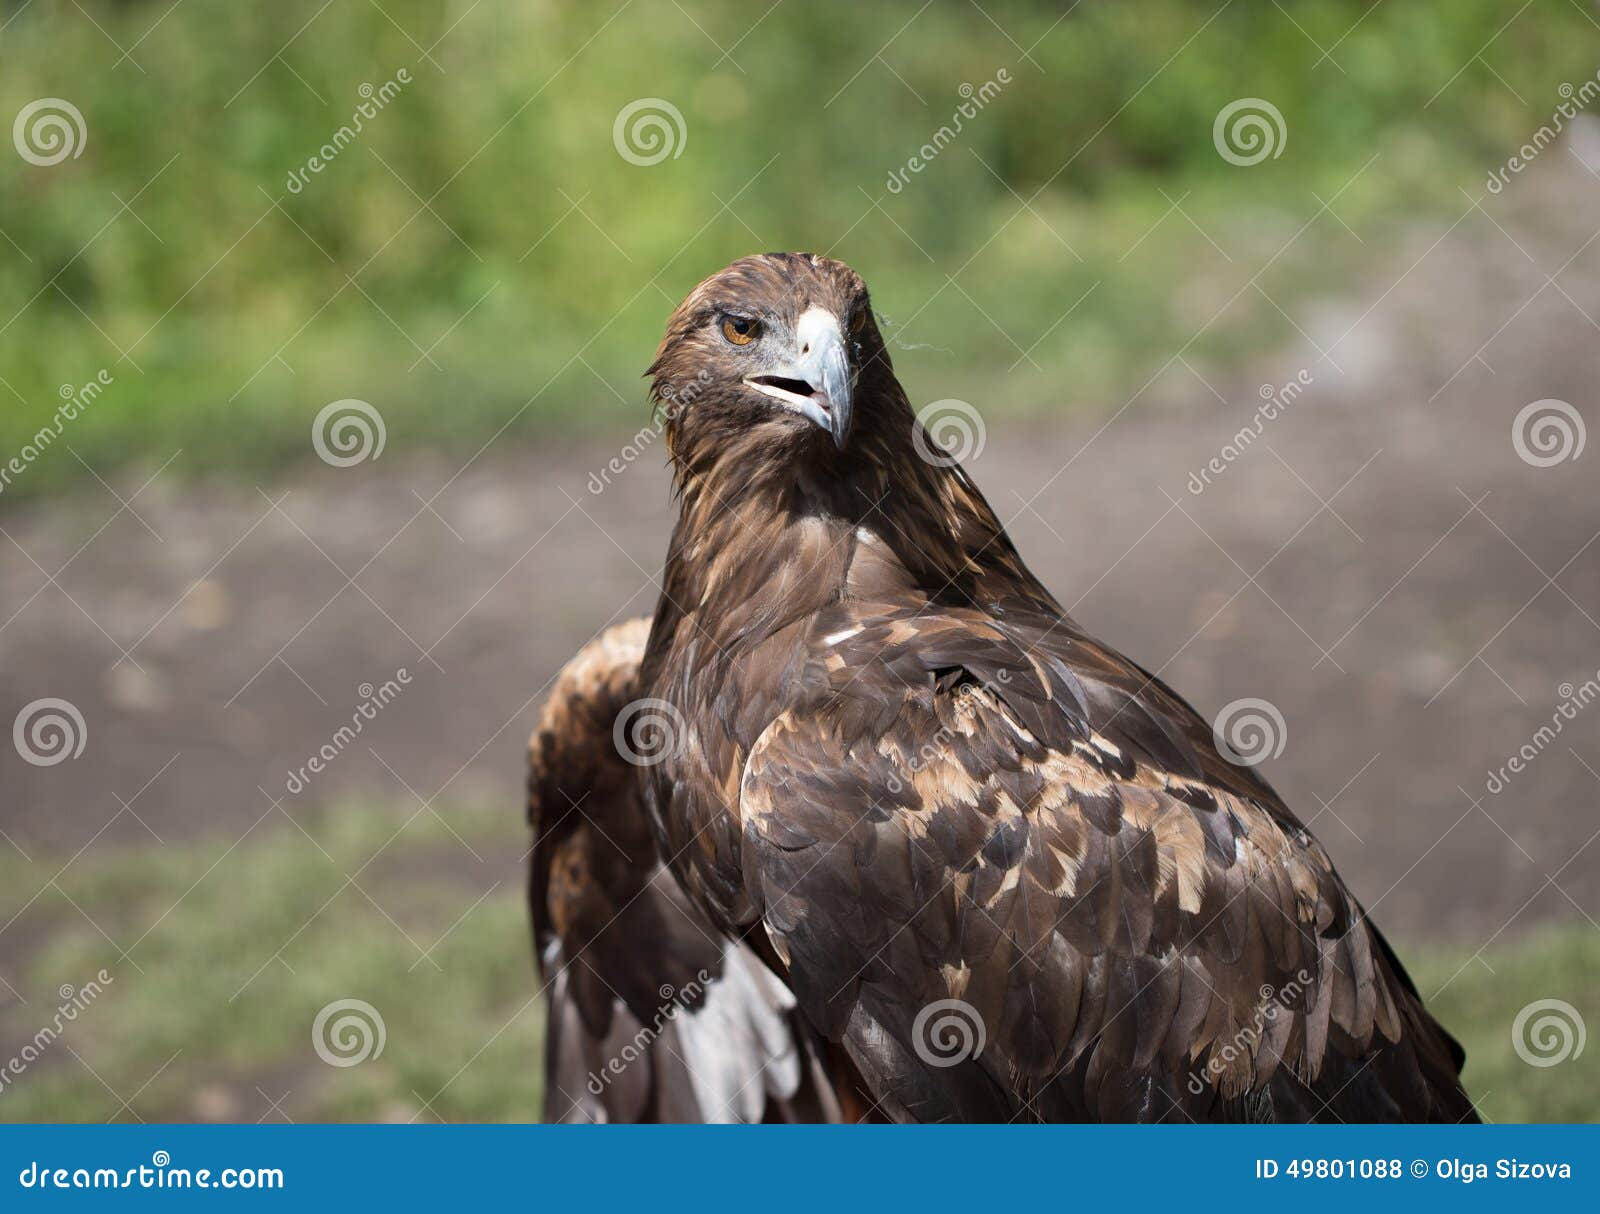 Eagle Filia photo for you